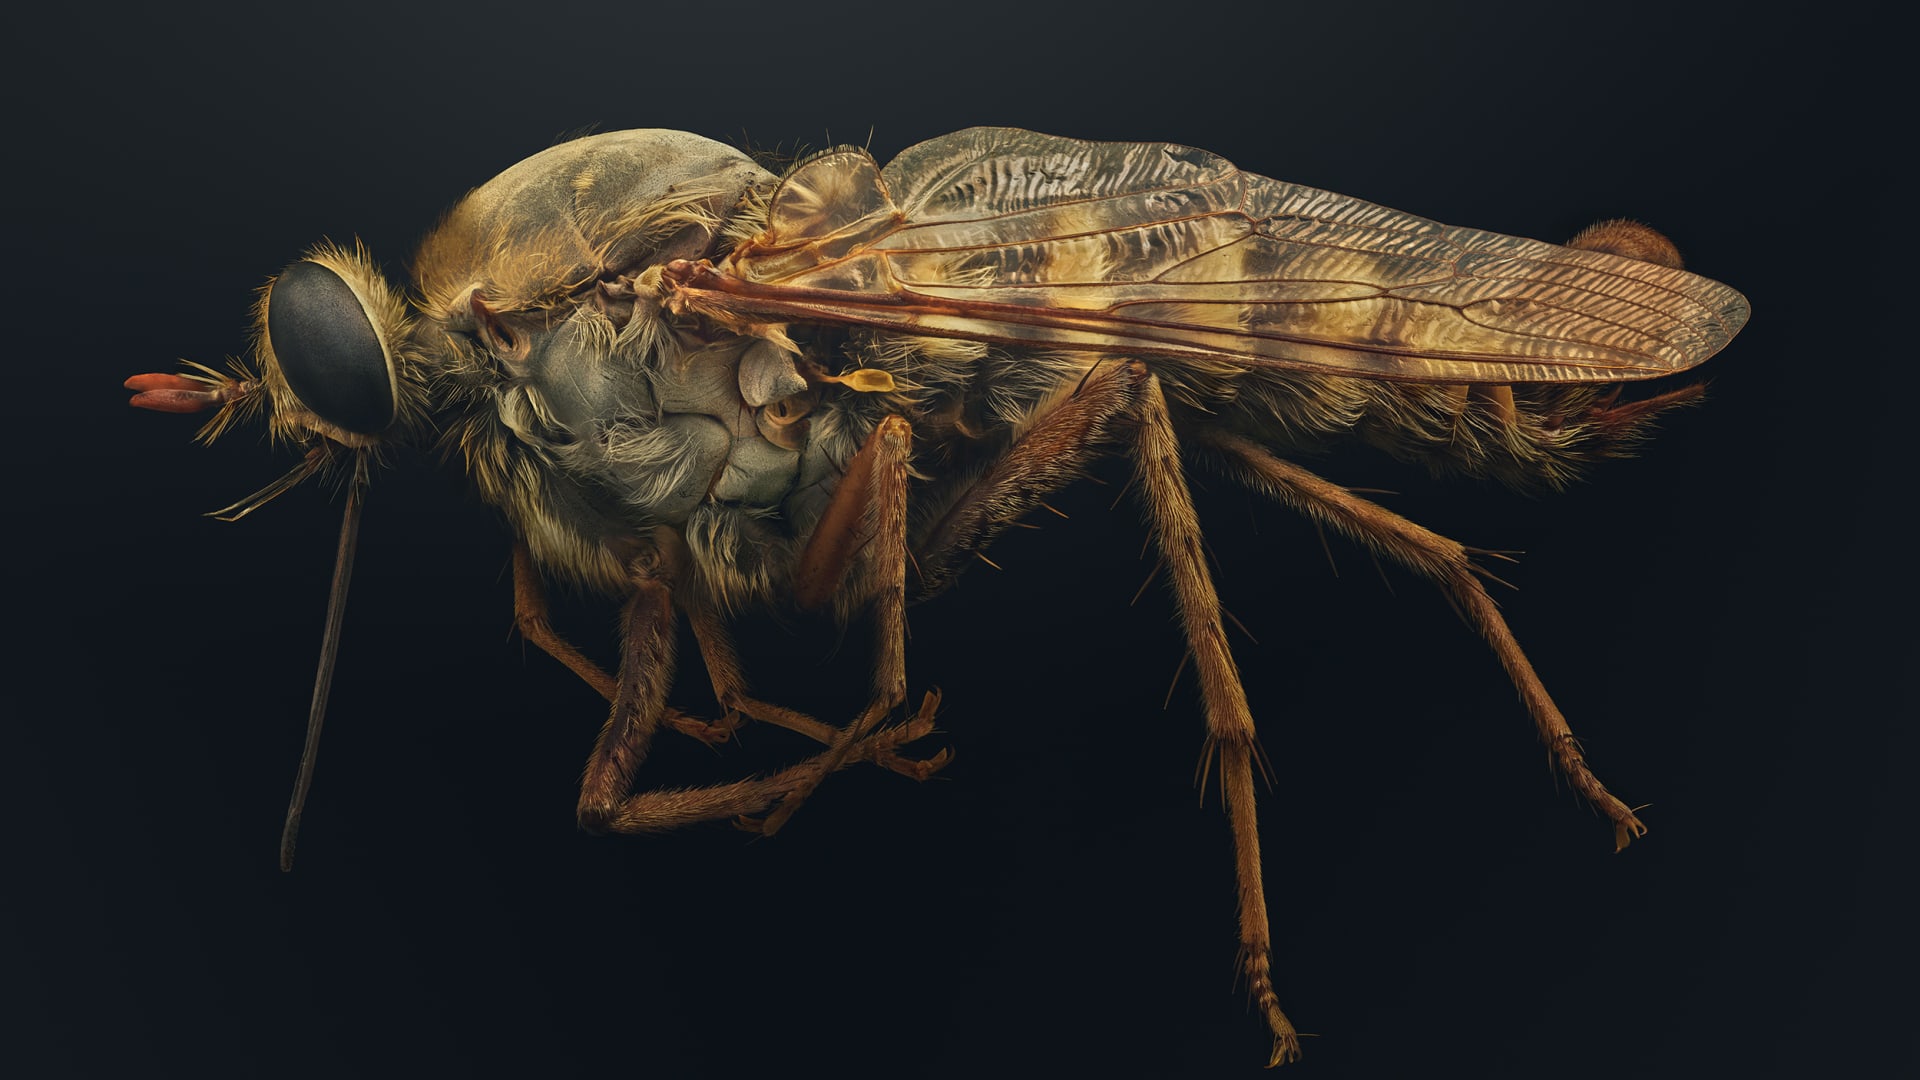 "حشراتٌ في خطر"..صور دقيقة تبرز جمال مخلوقات مهددة تشاركنا الكوكب